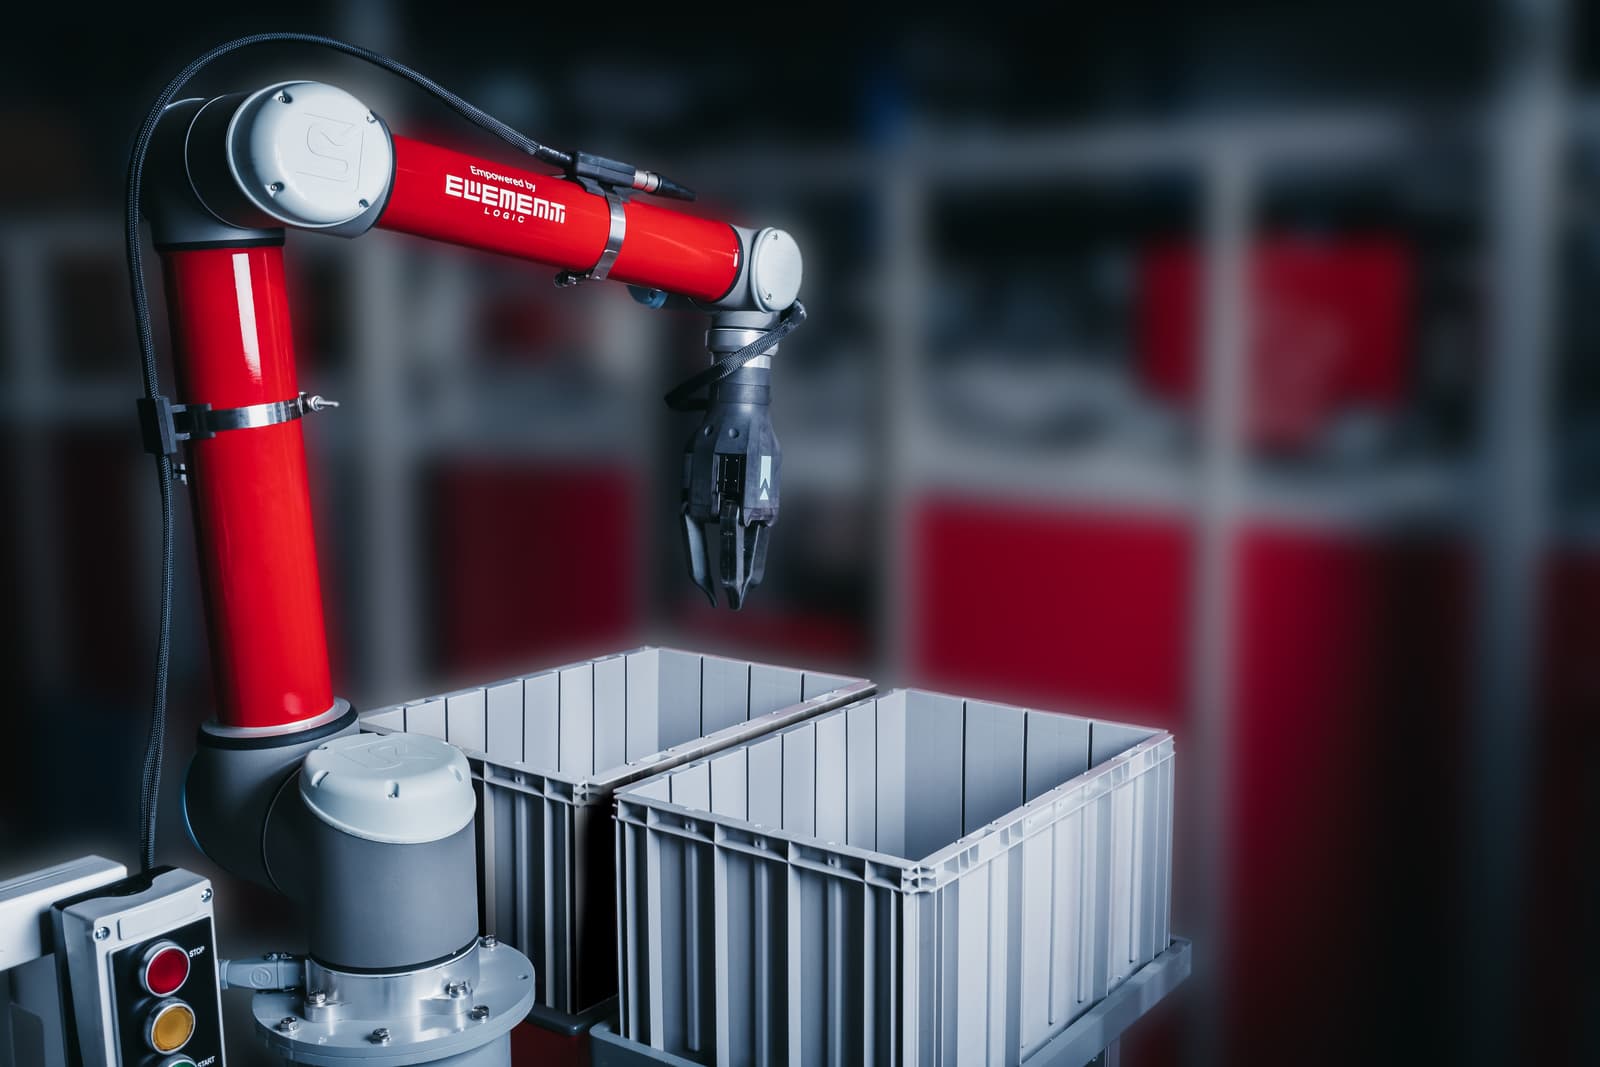 robot de picking unitario conectado a un almacén AutoStore